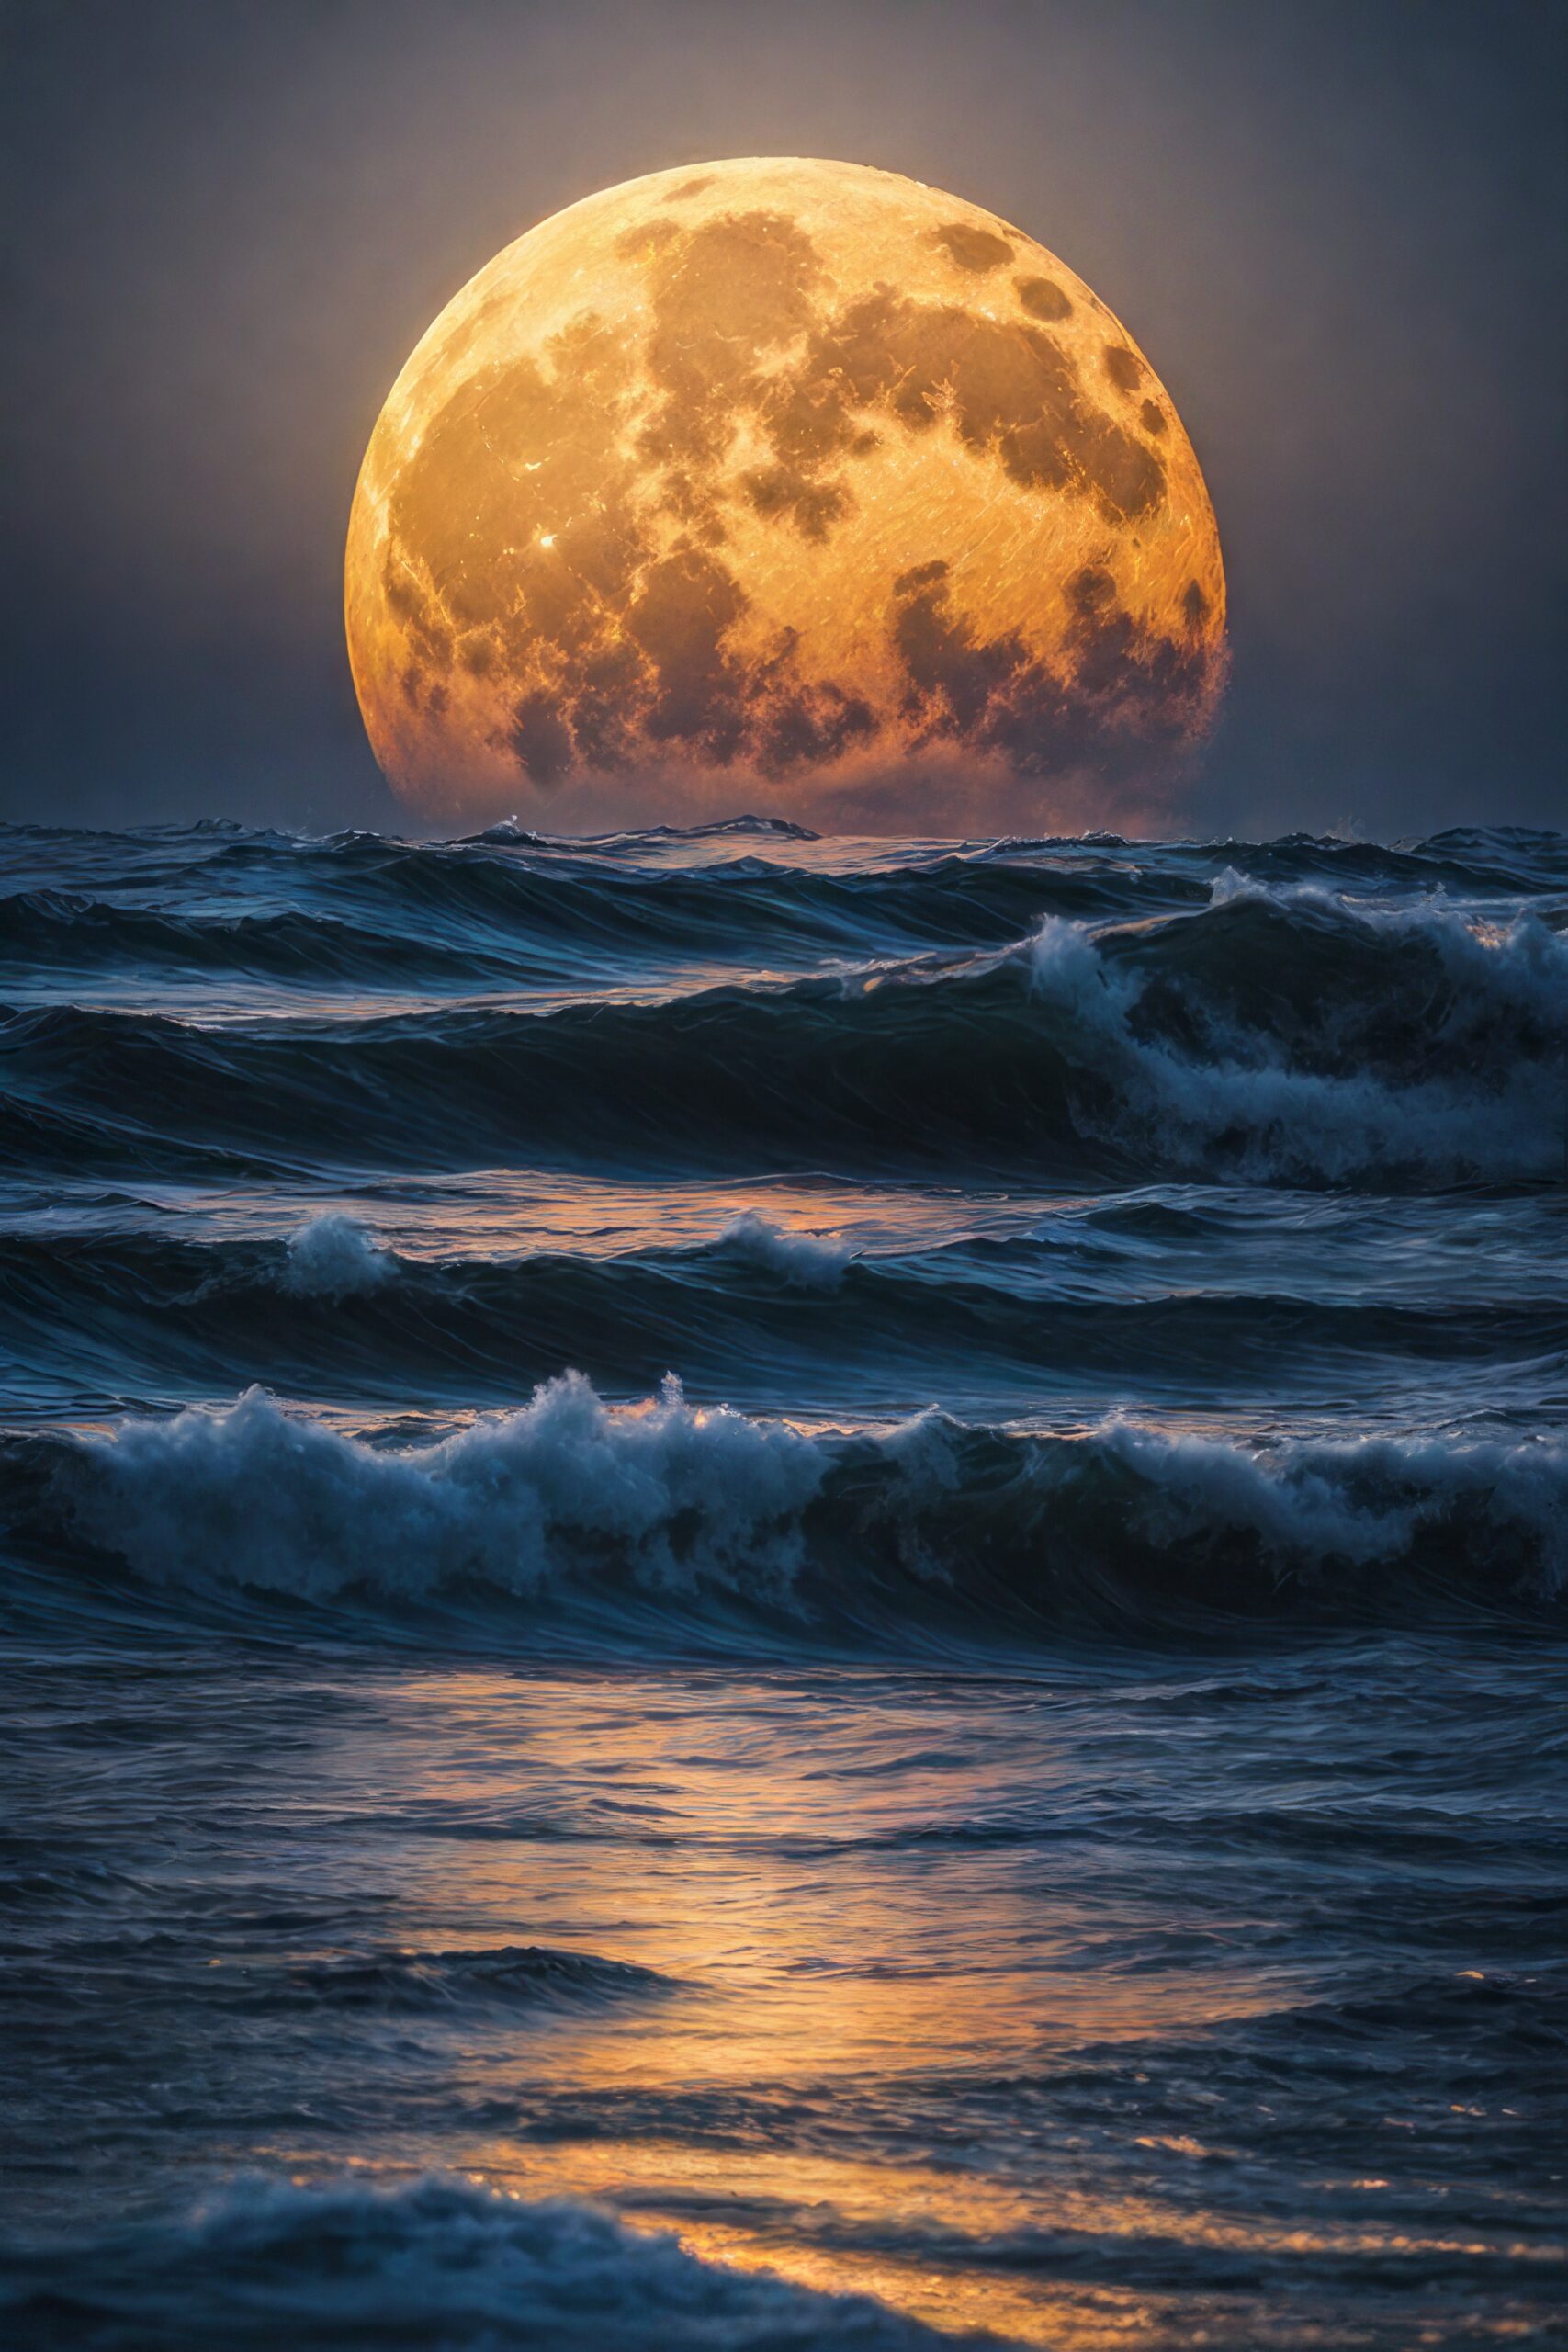 夜空に輝く大きな月と海と波の幻想的な風景＆癒しのスマホ壁紙リアル写真風素材